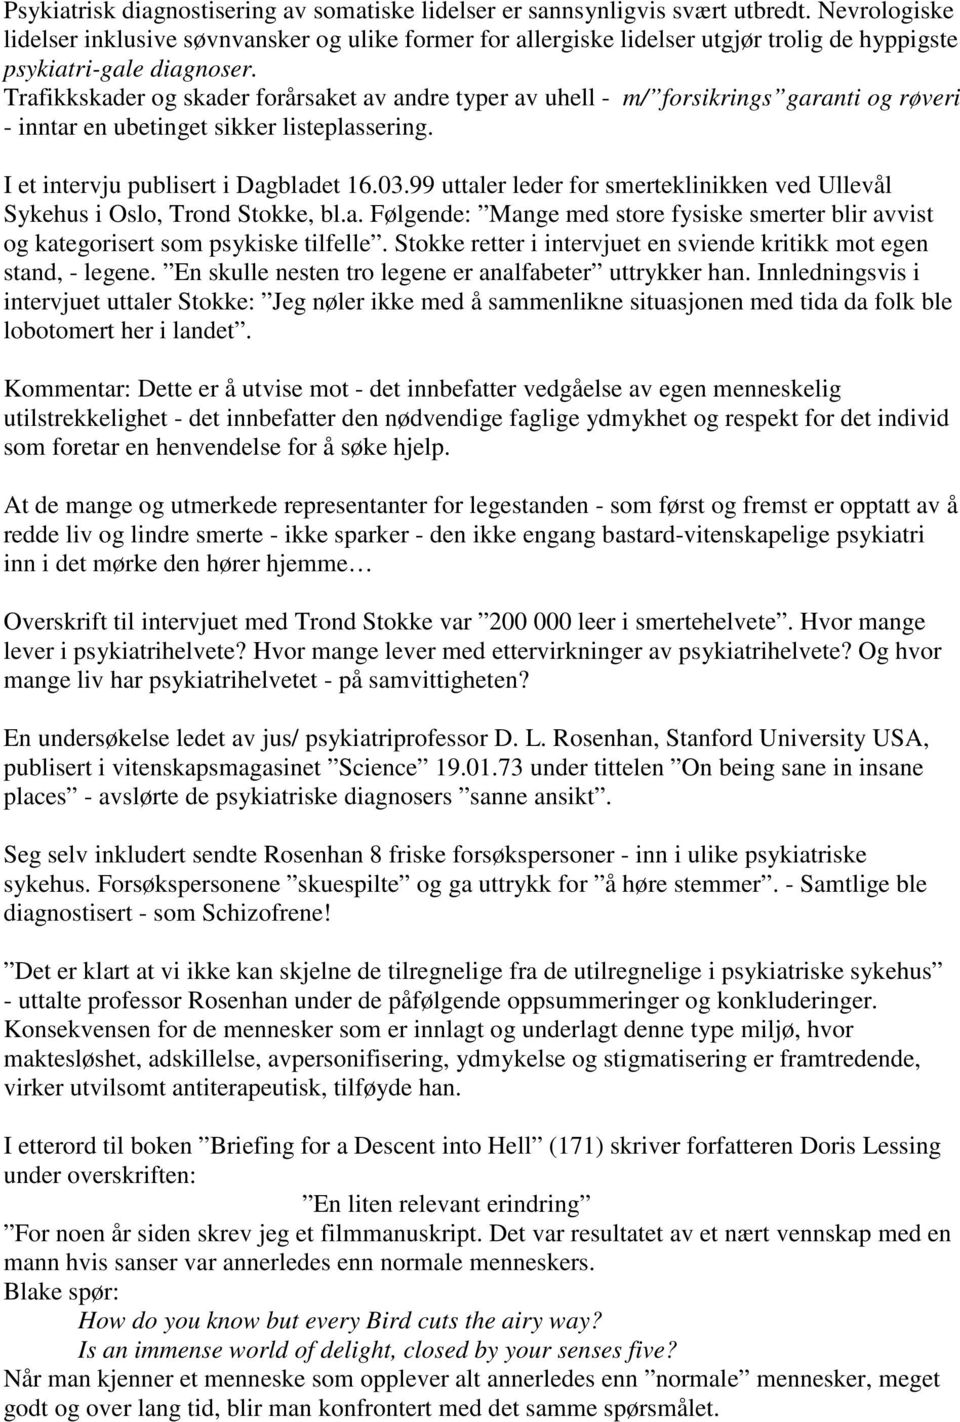 Trafikkskader og skader forårsaket av andre typer av uhell - m/ forsikrings garanti og røveri - inntar en ubetinget sikker listeplassering. I et intervju publisert i Dagbladet 16.03.